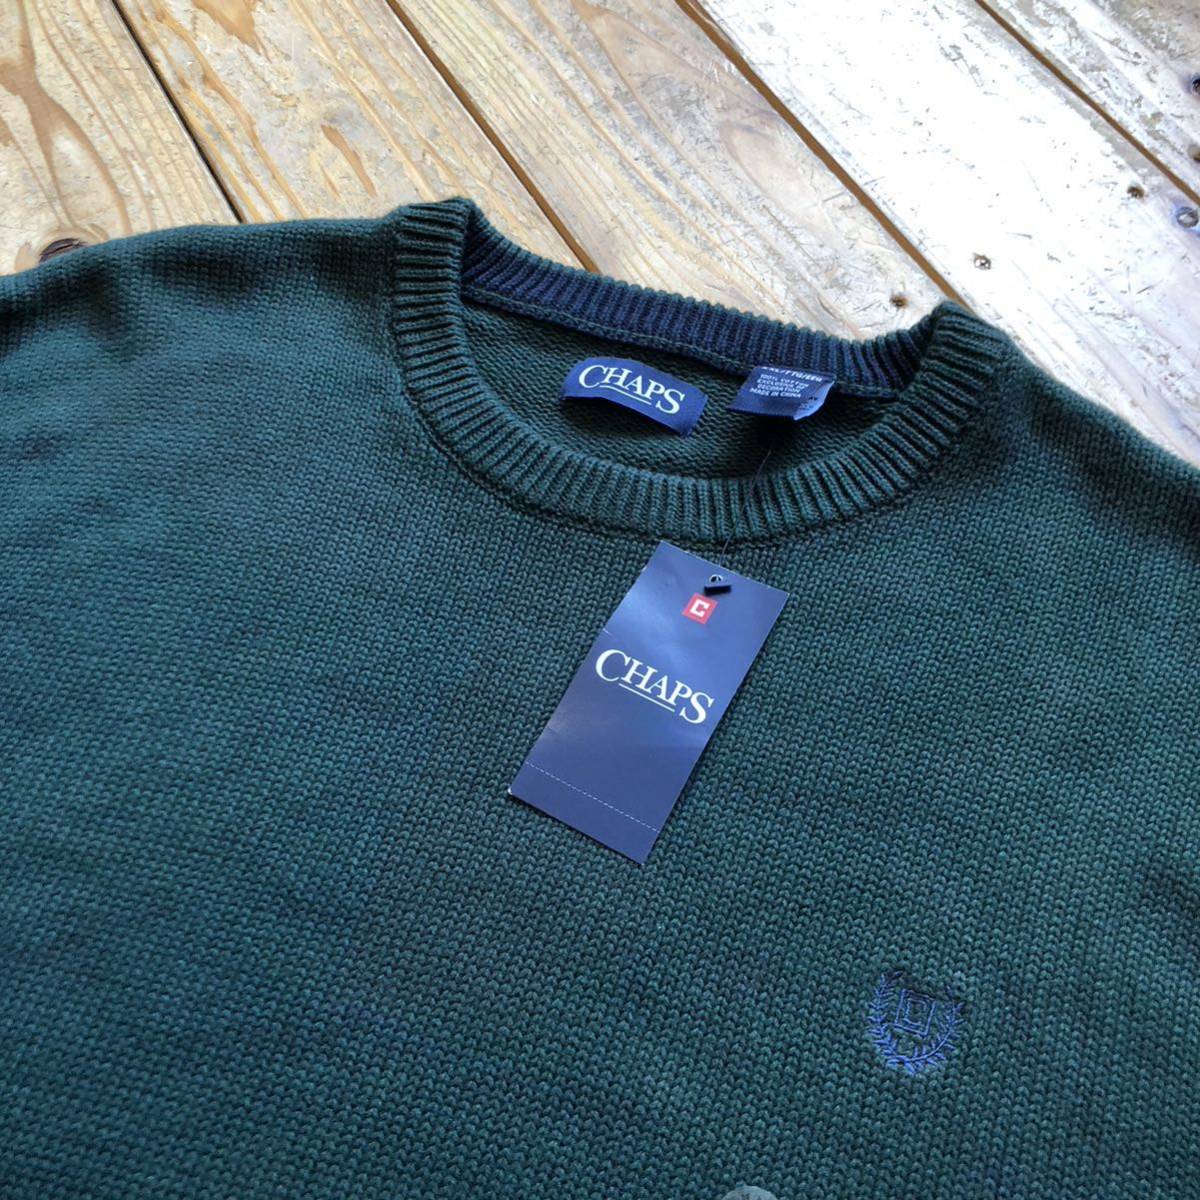  новый товар CHAPS chaps хлопок вязаный мужской размер XXL зеленый American Casual America скупка casual свитер с биркой не использовался товар S0743